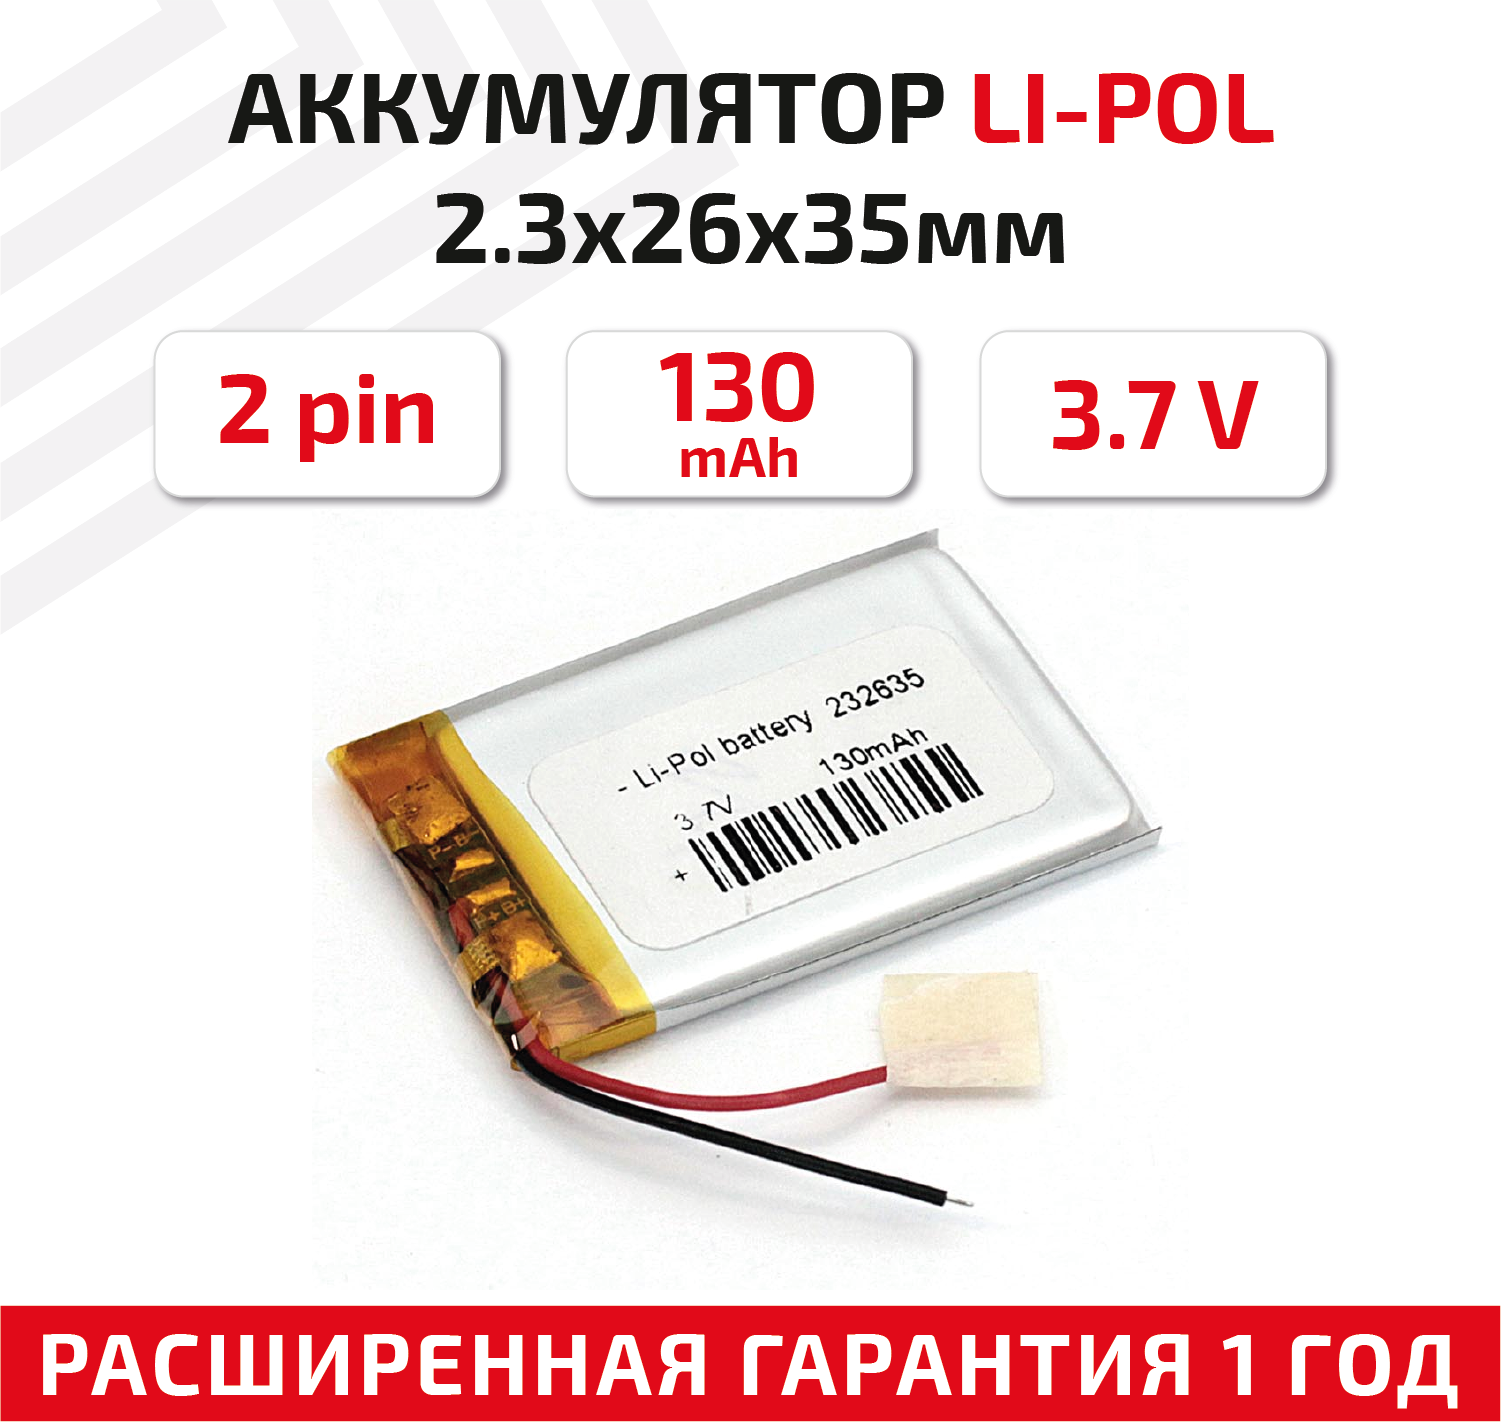 Универсальный аккумулятор (АКБ) для планшета, видеорегистратора и др, 2.3х26х35мм, 130мАч, 3.7В, Li-Pol, 2pin (на 2 провода)